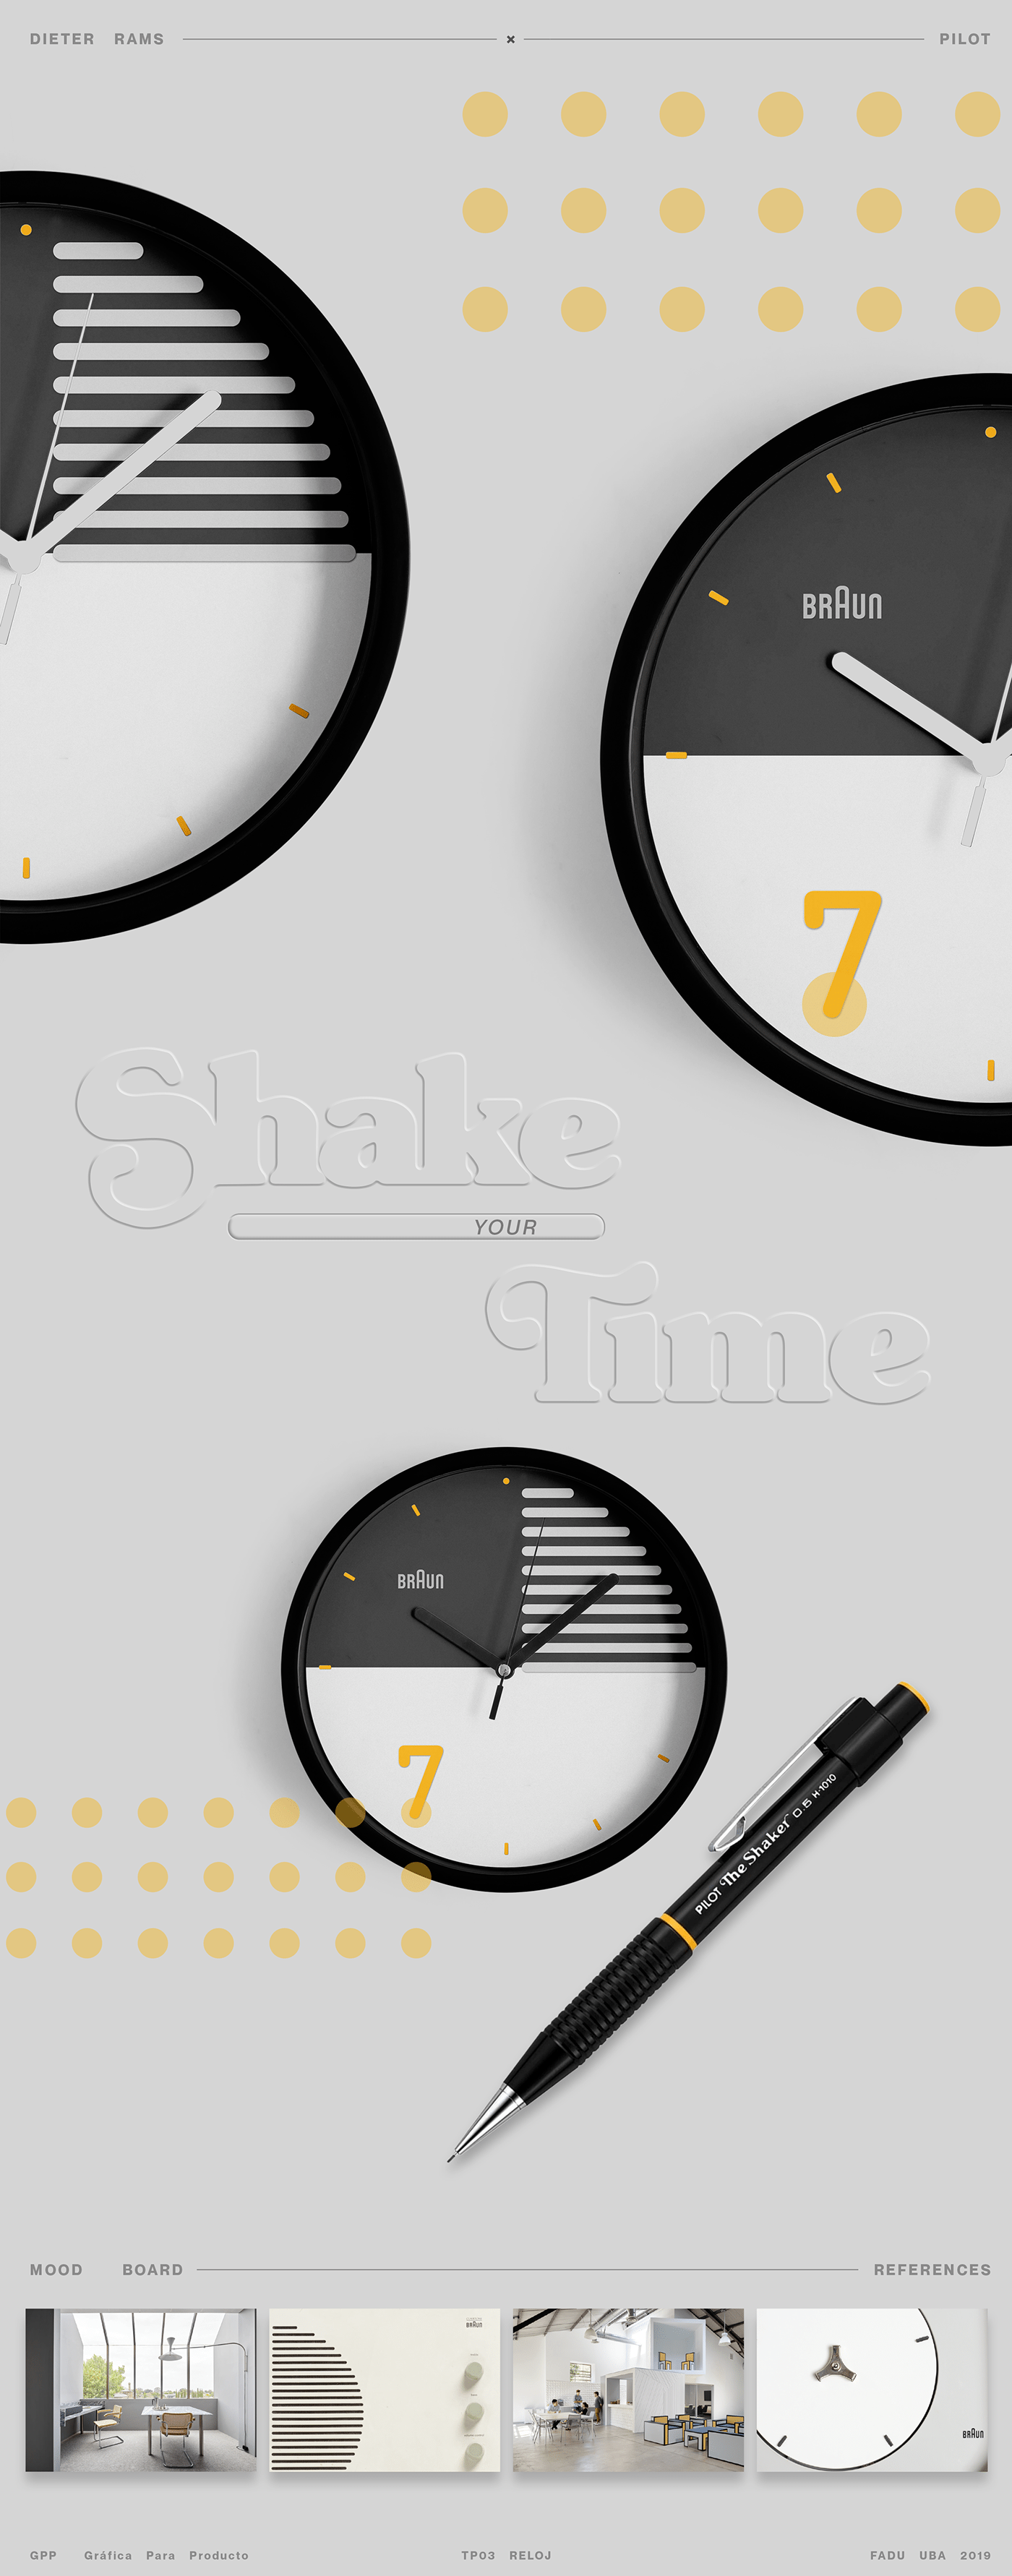 Advertising  concept diseño de producto fadu grafica para productos industrial design  product product design  reloj watch